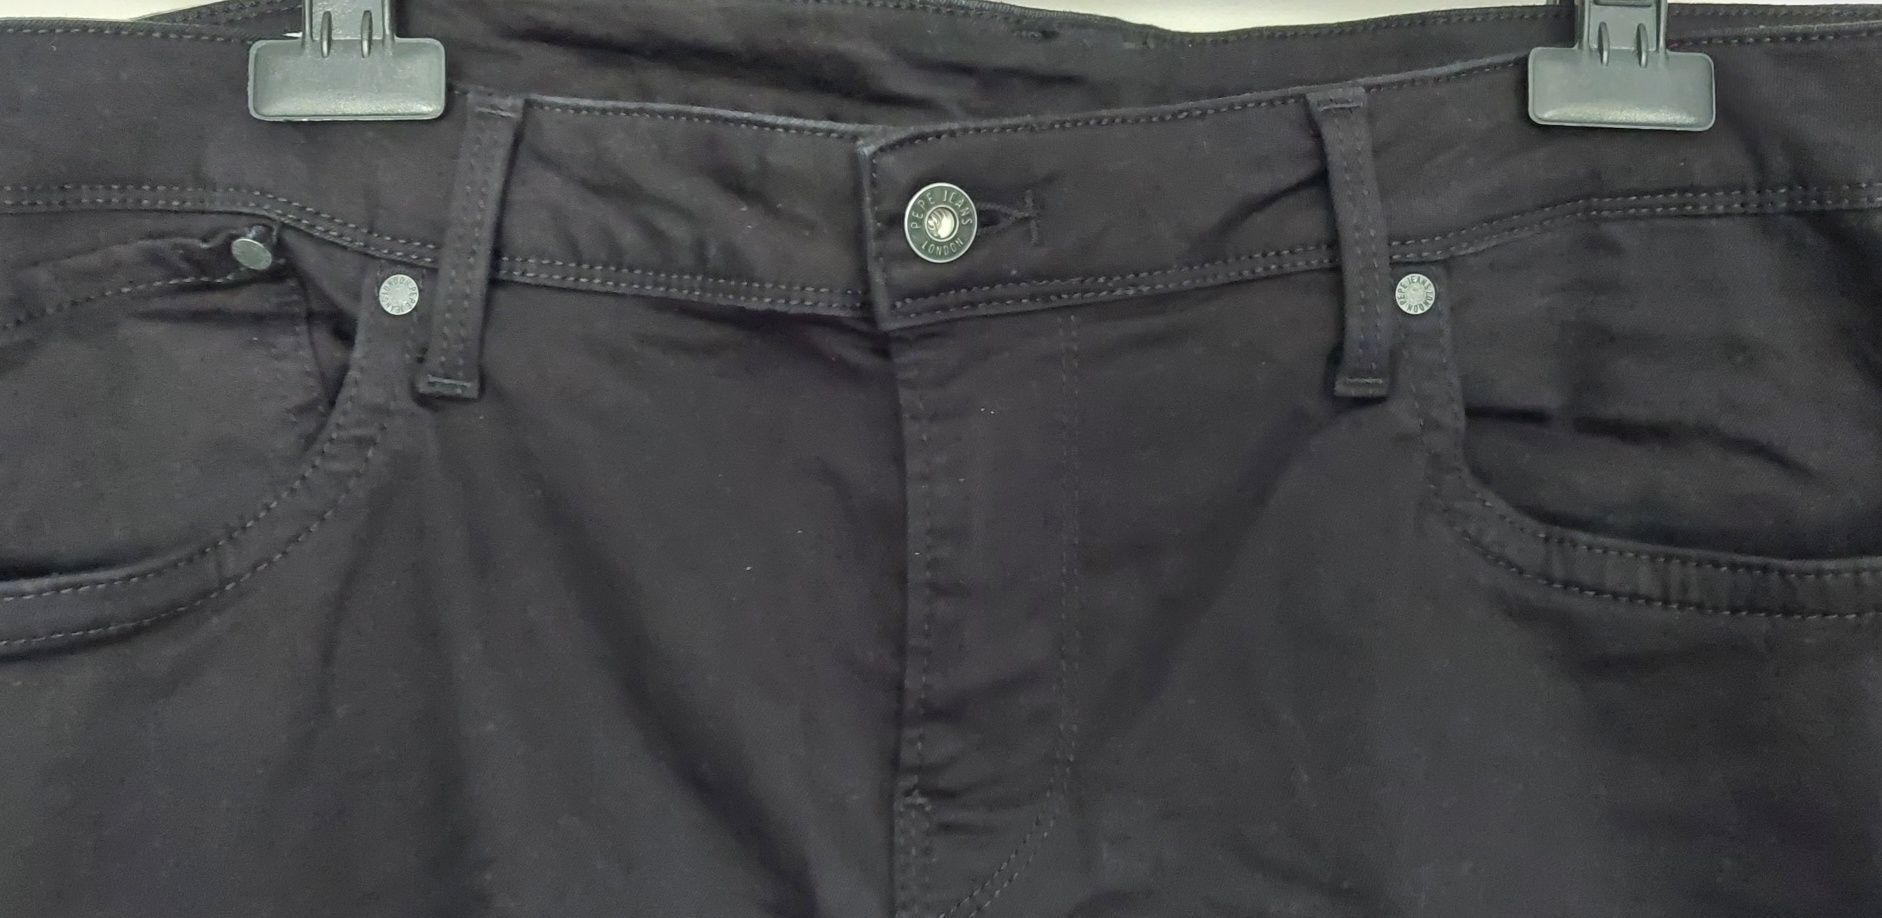 Spodnie męskie Pepe Jeans 40/30 185/106 Slim czarne